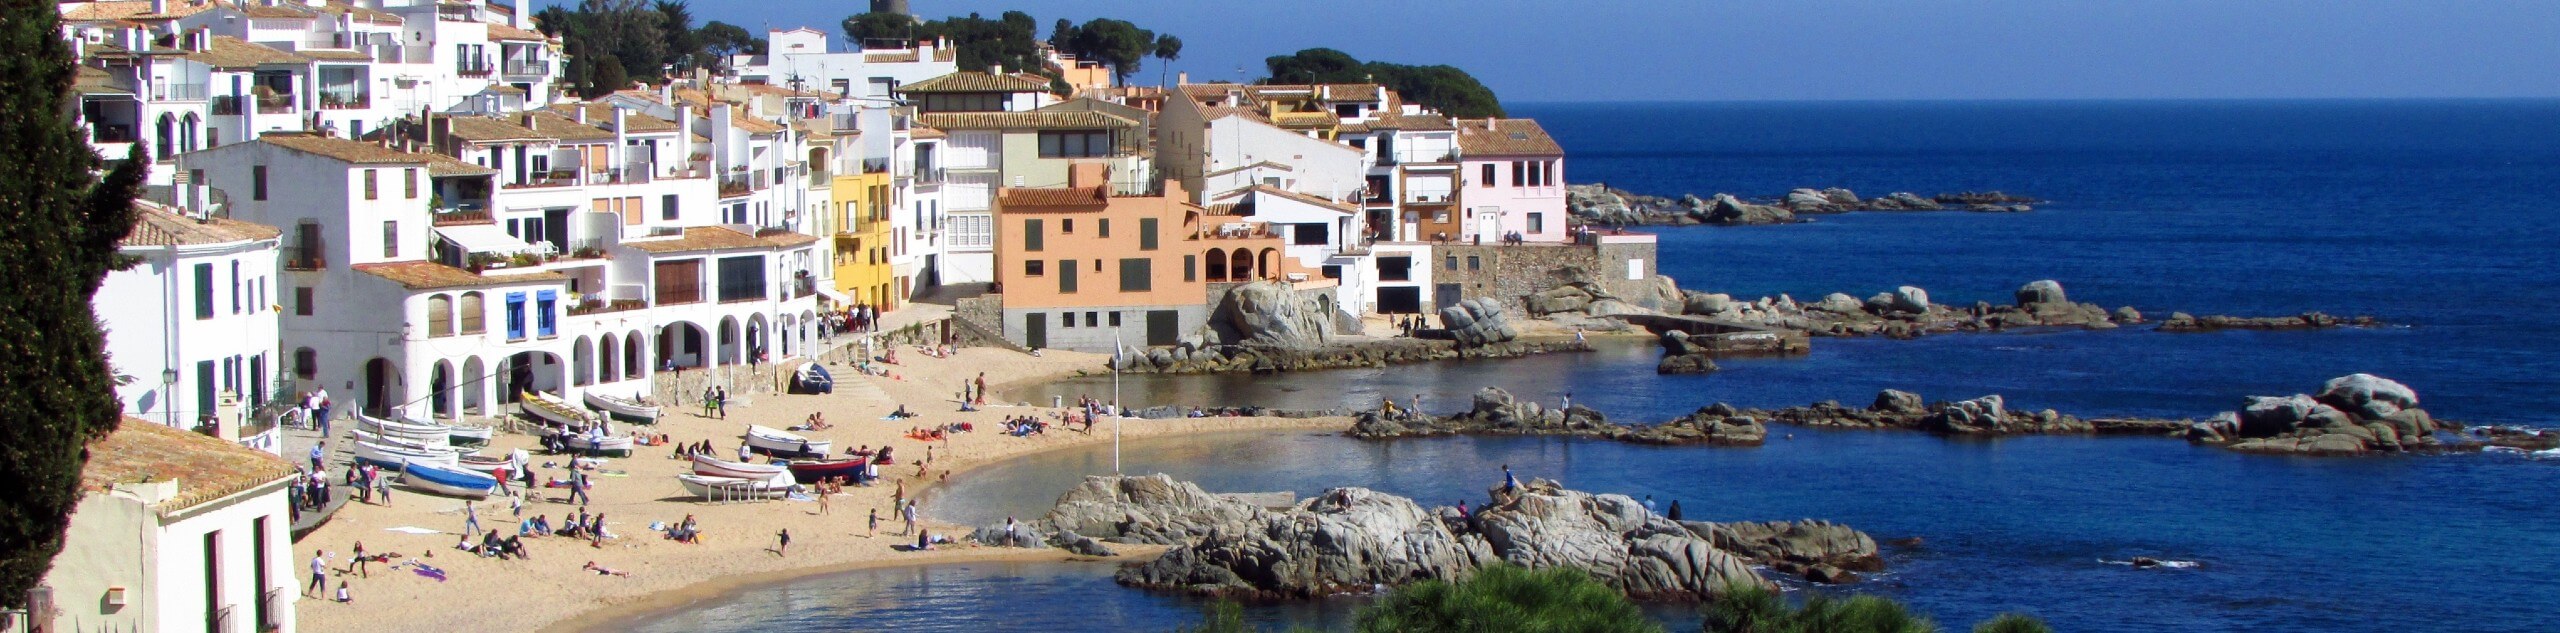 Costa Brava: Calella de Palafrugell to Cadaqués